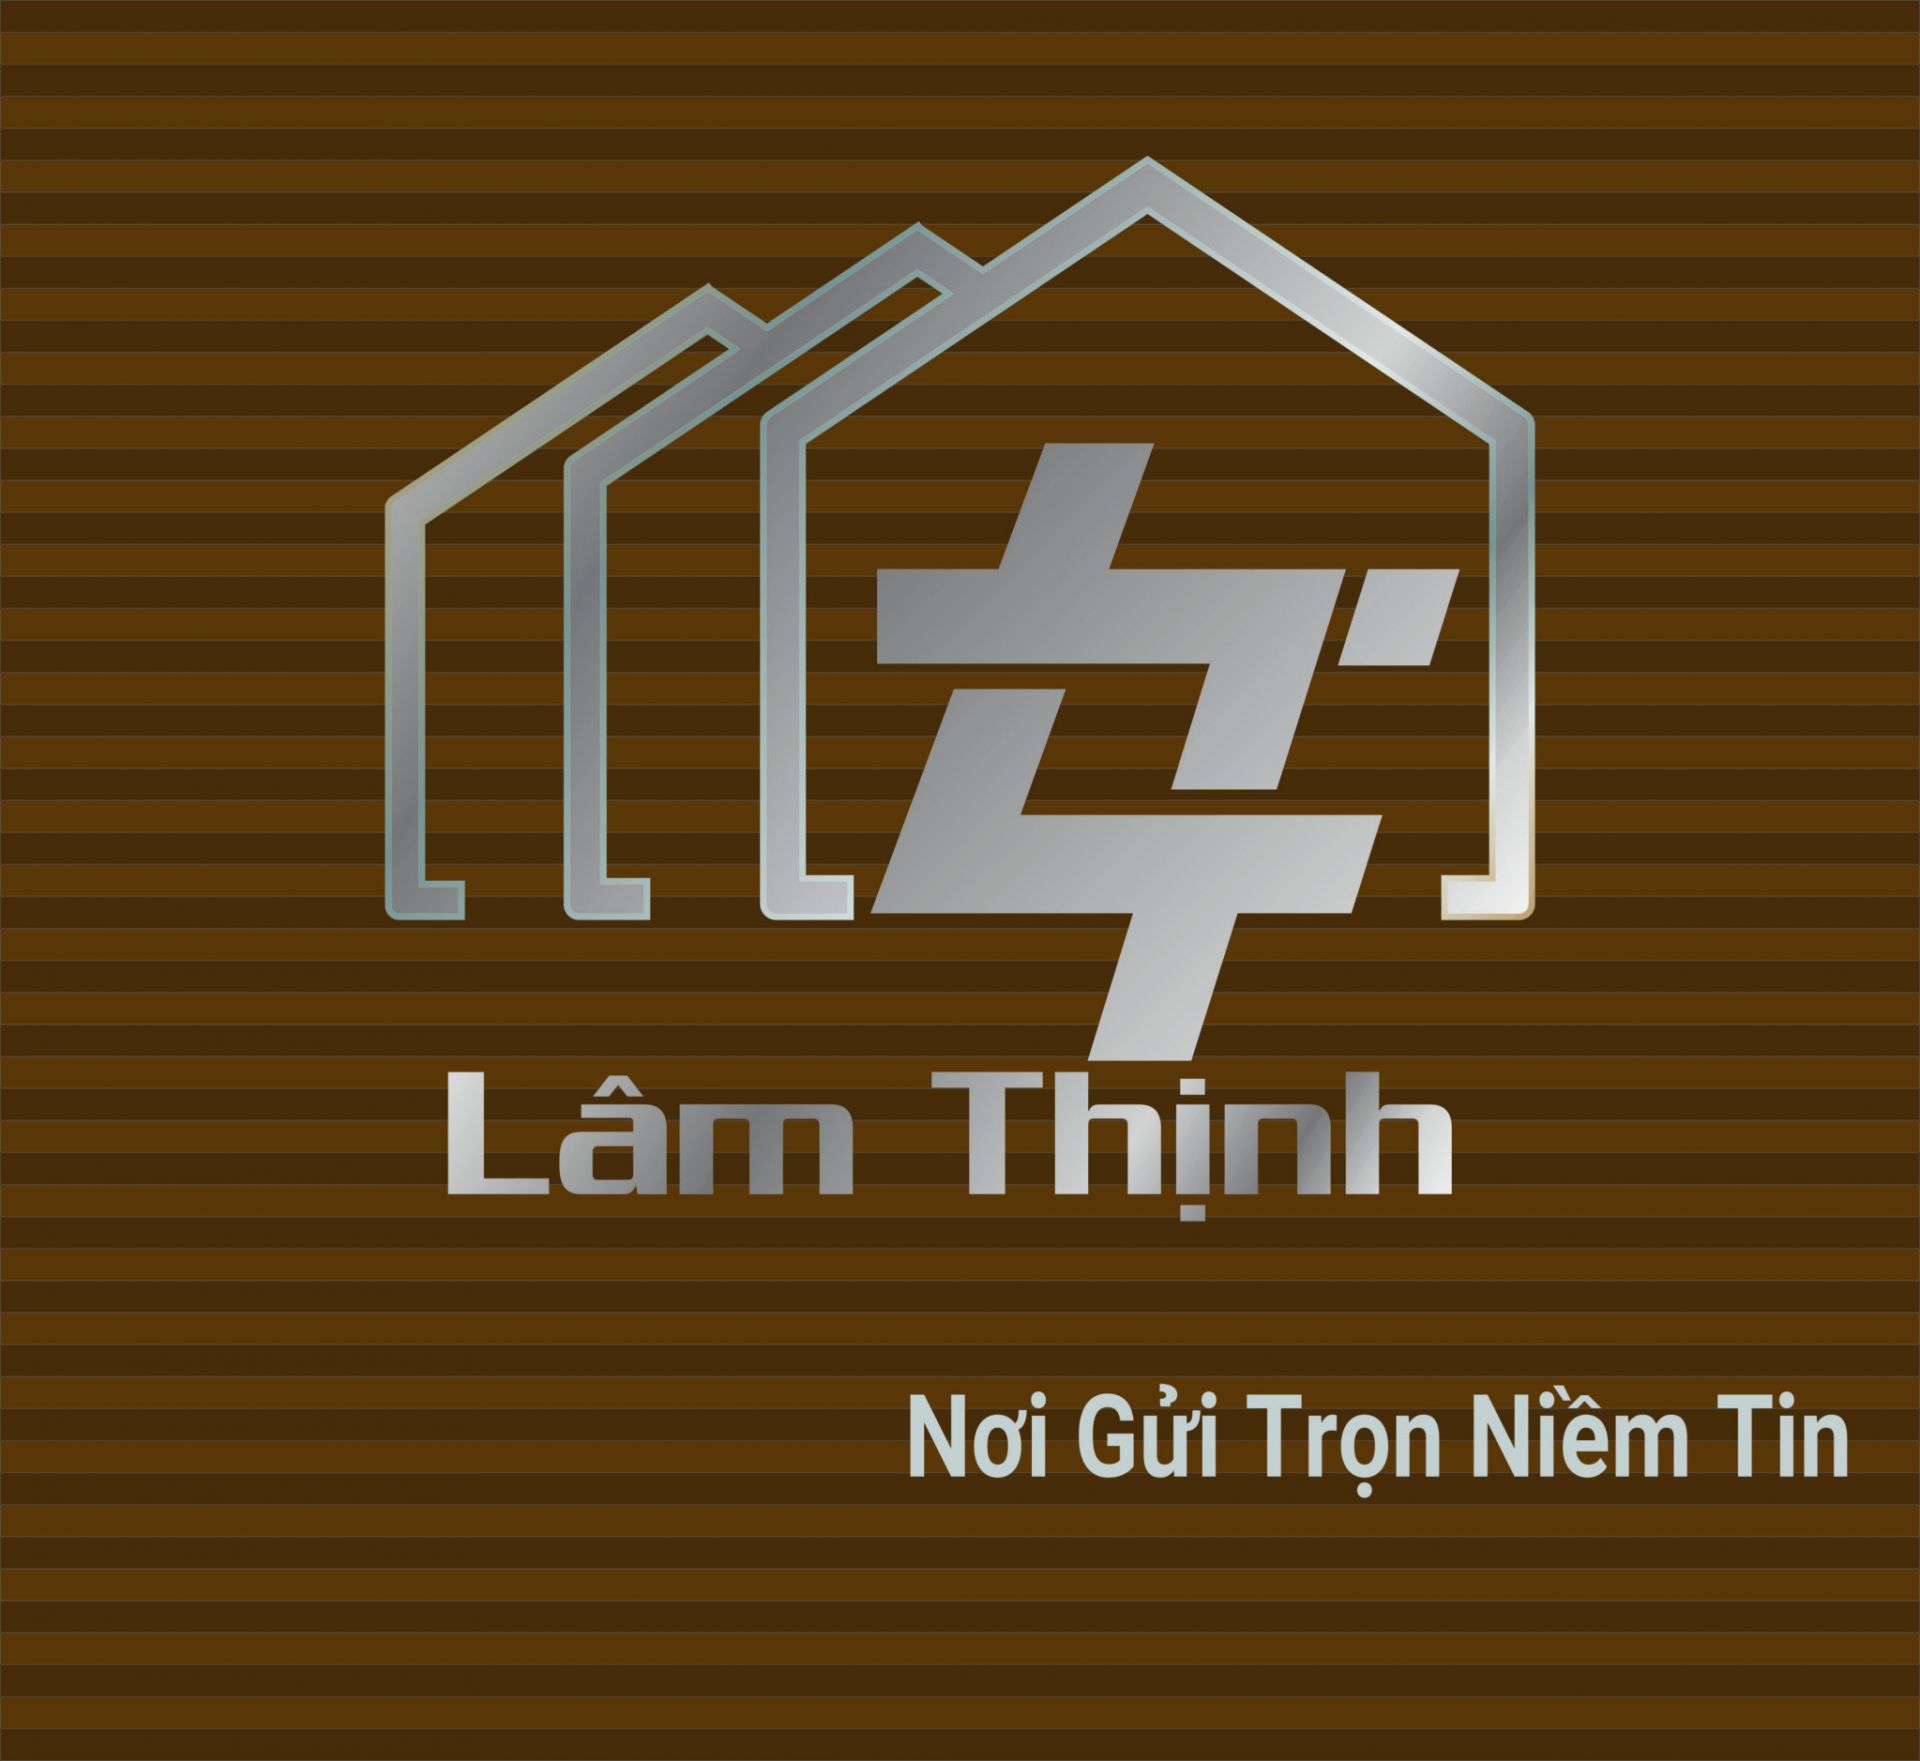 NPP lâm thịnh - singhal Lạng Sơn